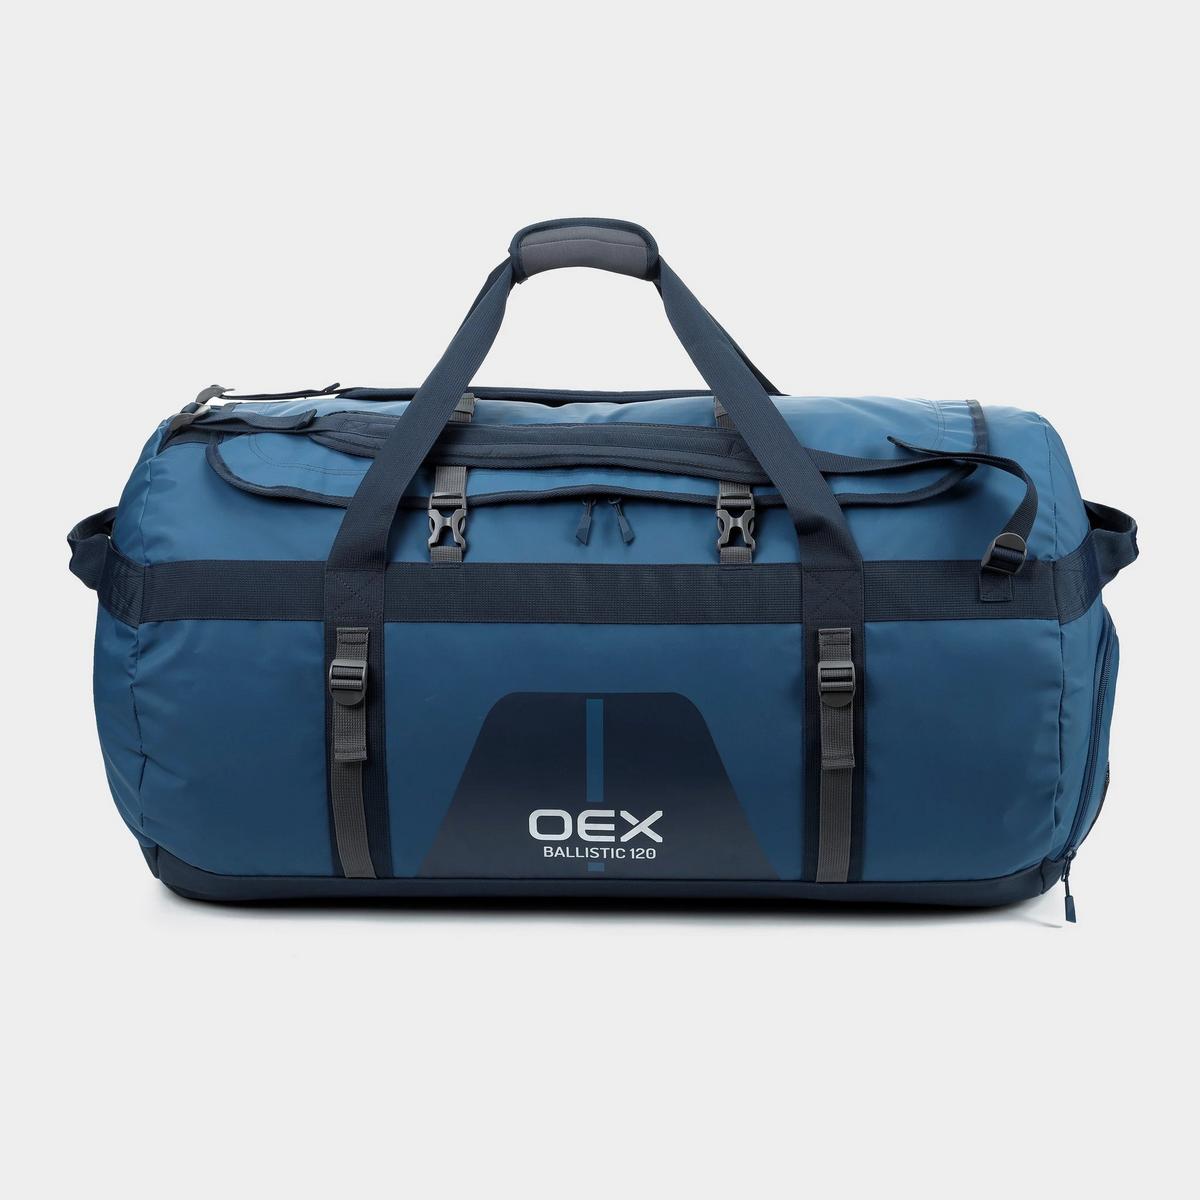 Oex Ballistic 120L Cargo Bag - Petrol